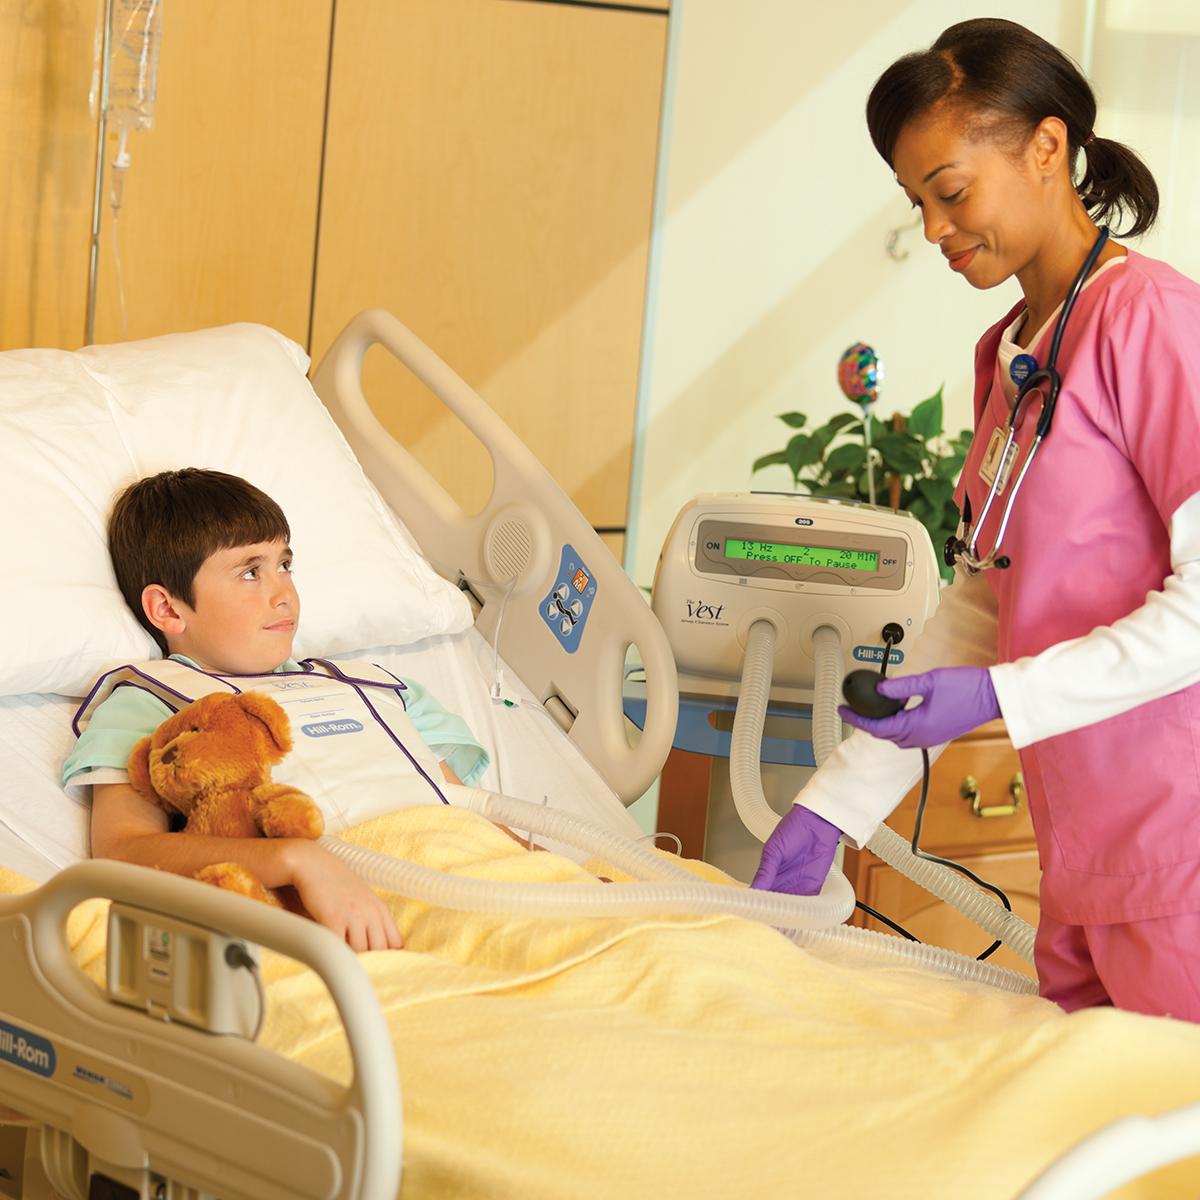 Un bambino in un letto d'ospedale tiene un orsacchiotto mentre riceve il trattamento con il sistema Vest, modello 205.